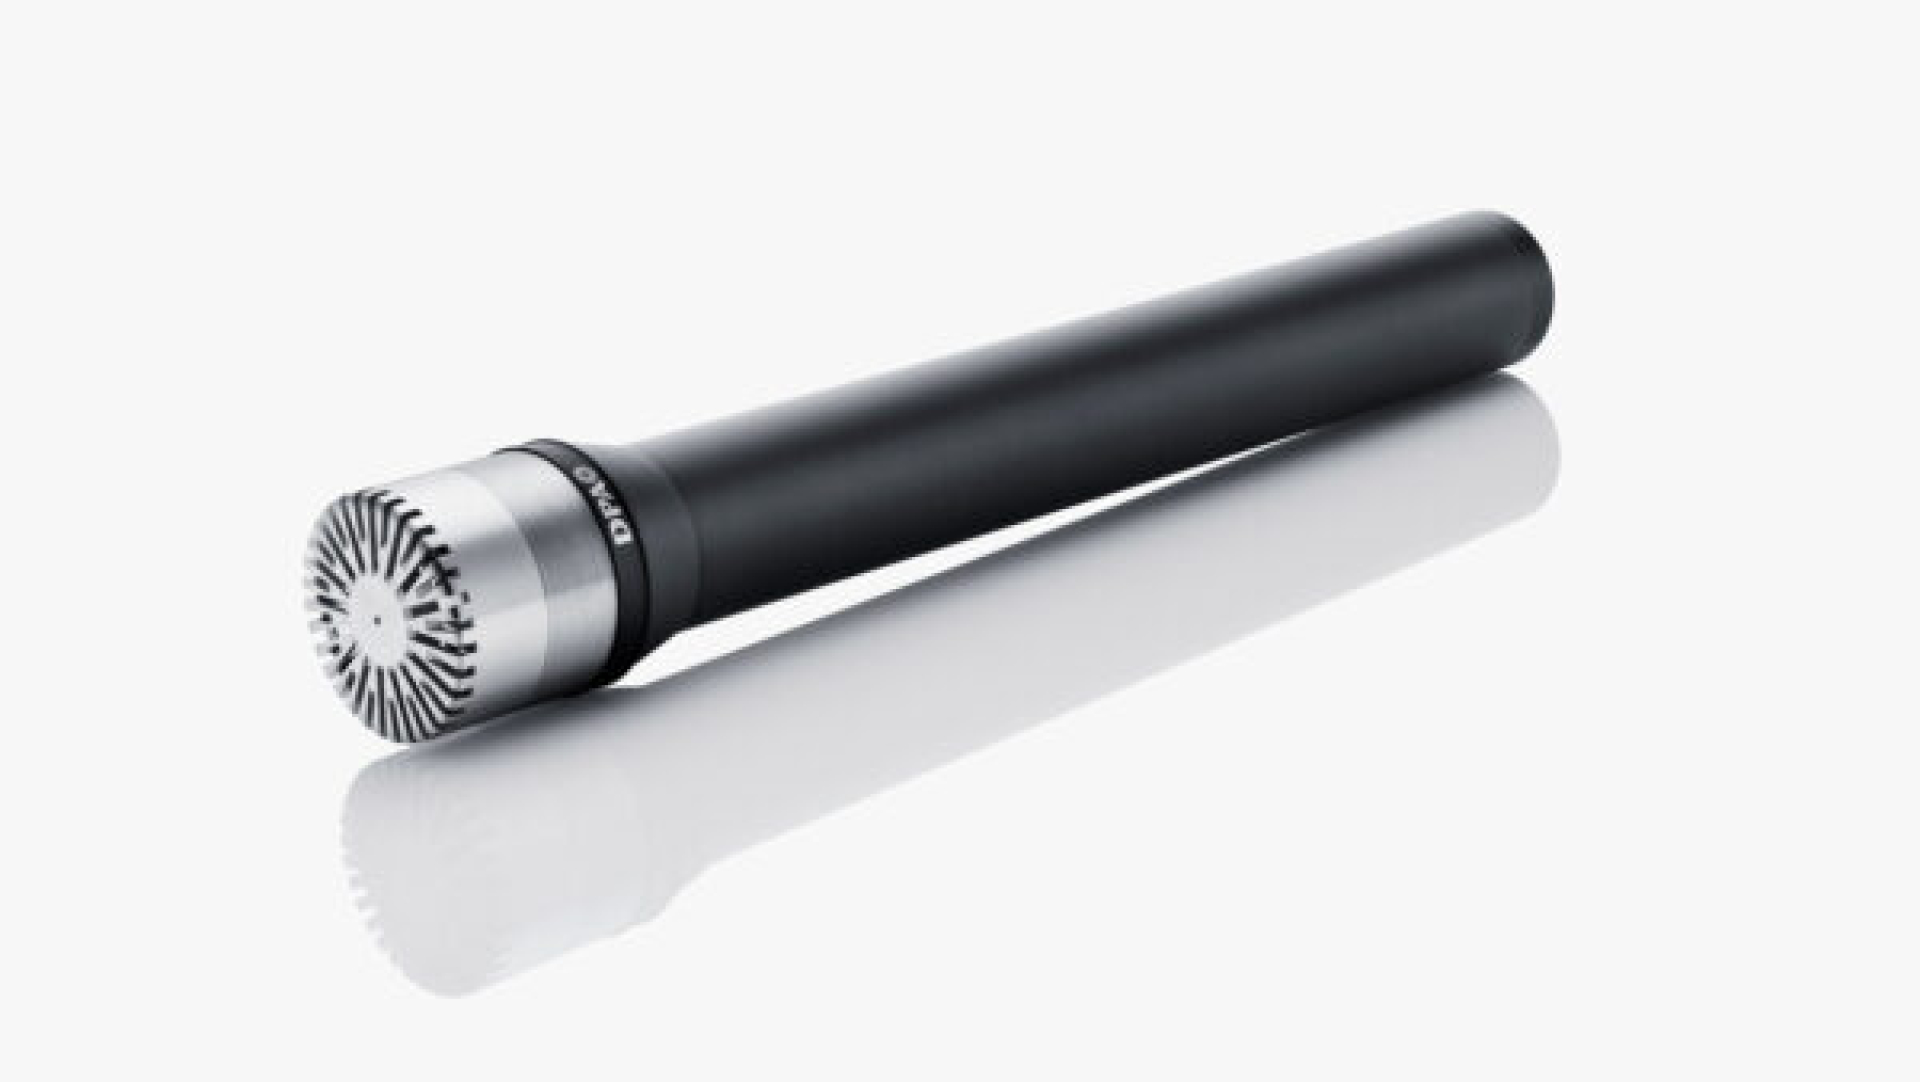 DPA 4041 Pencil Microphones